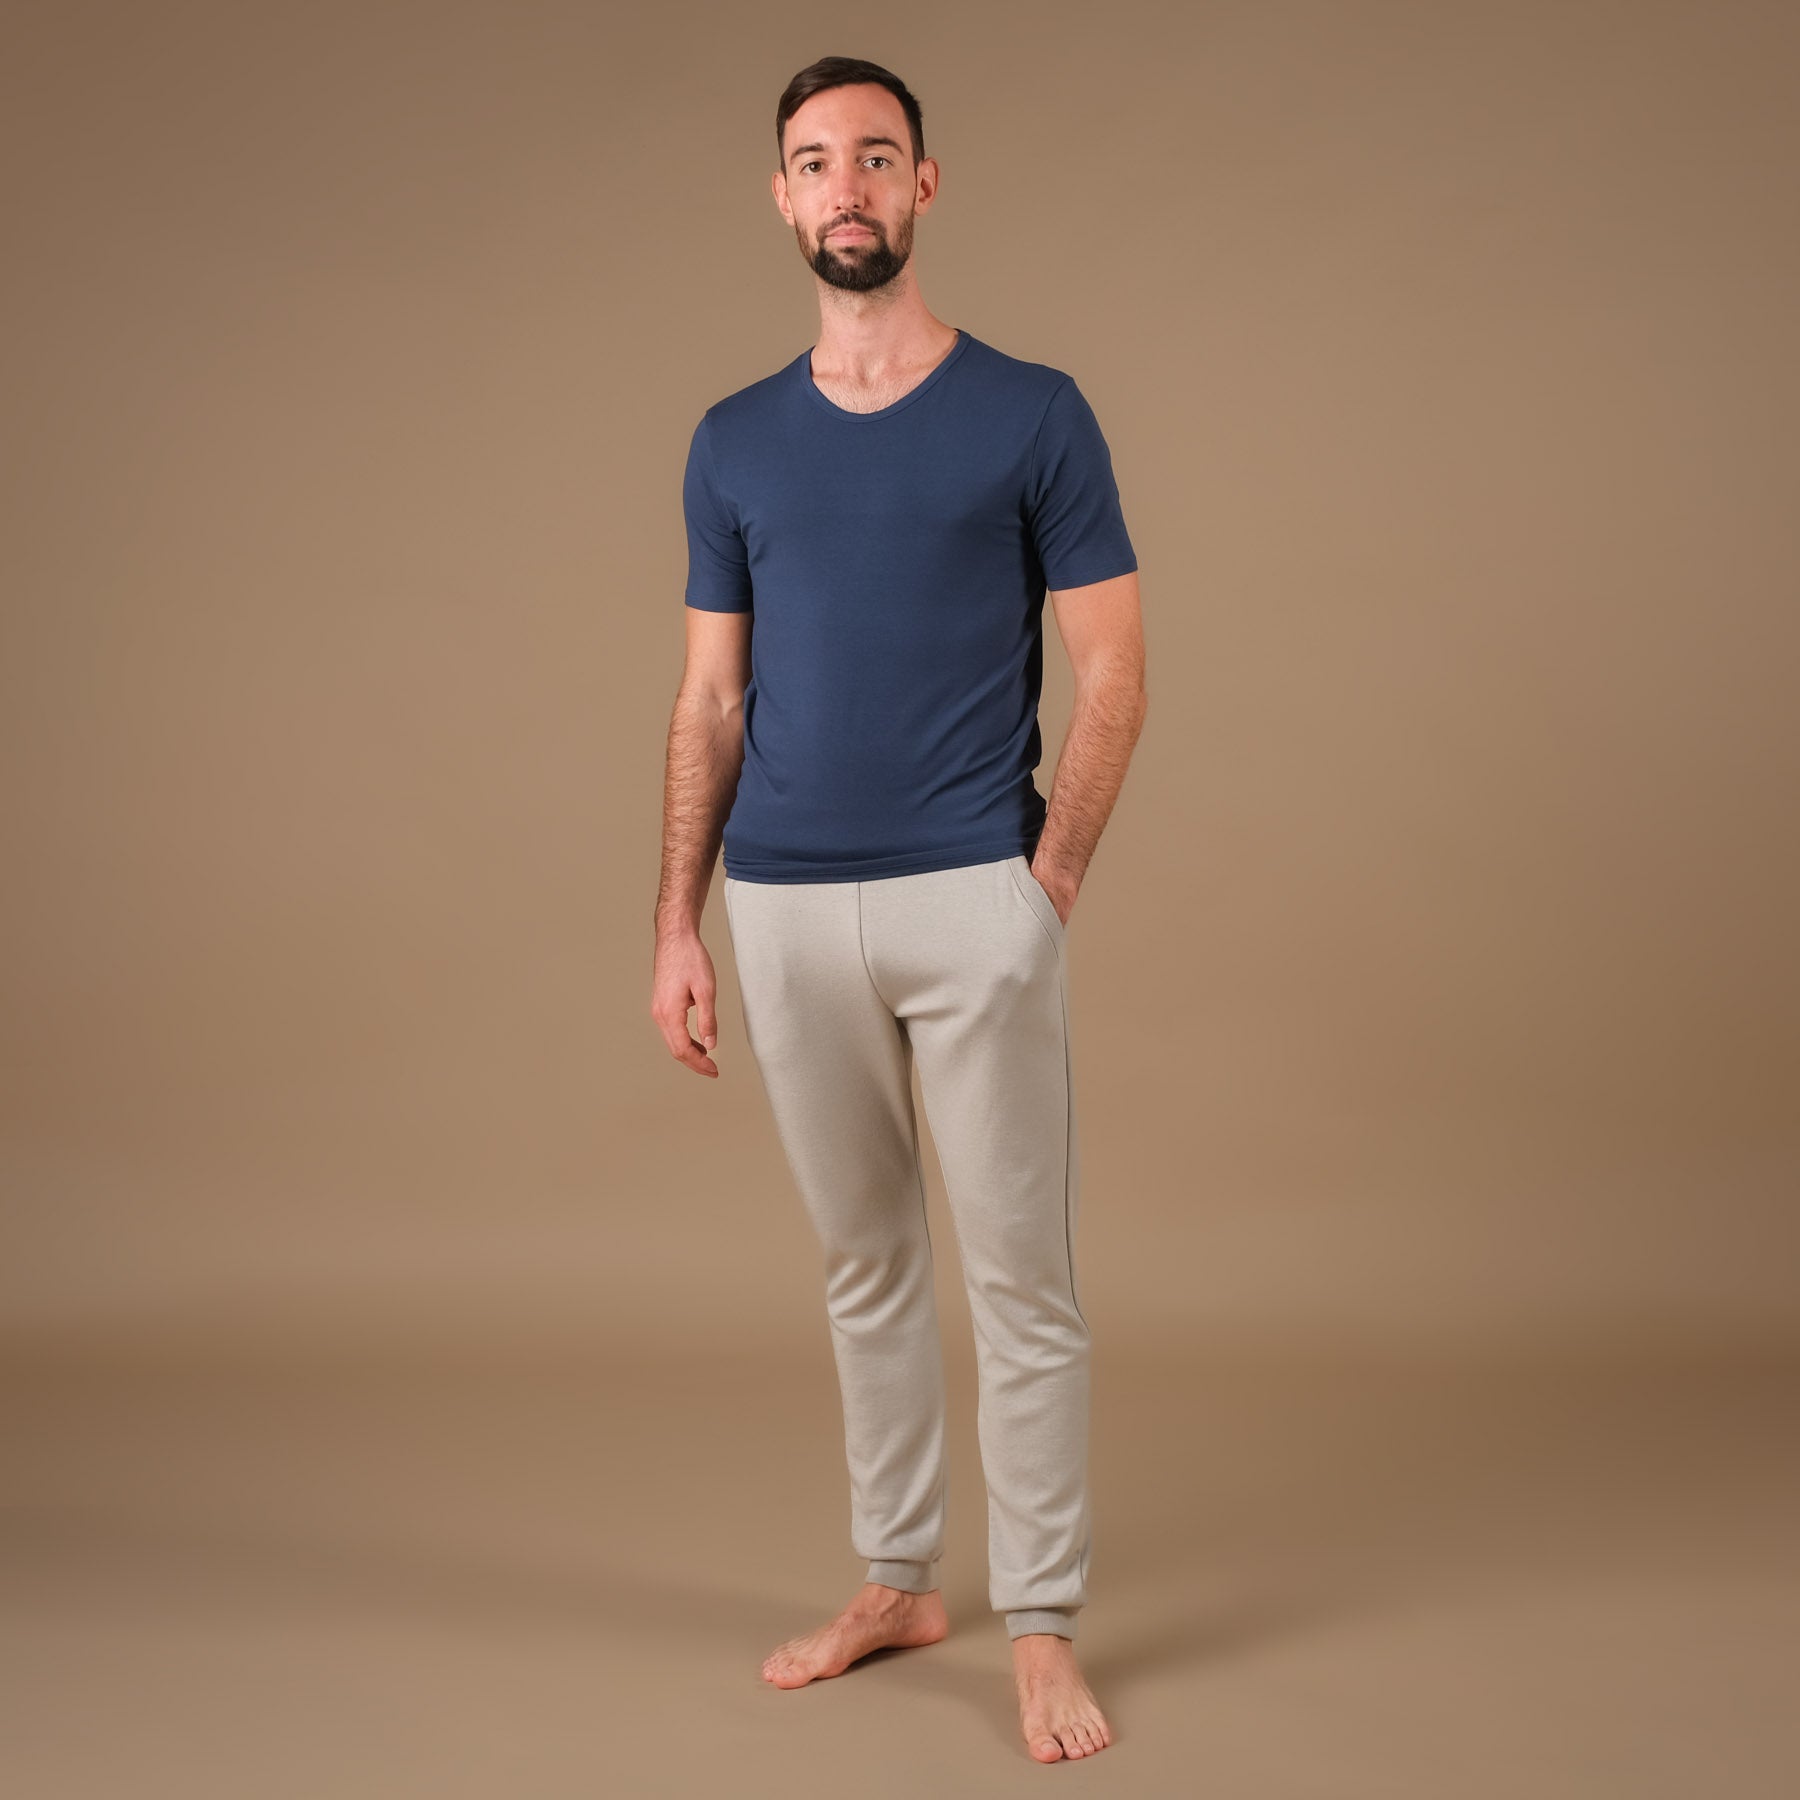 Shirt de yoga pour hommes Classy à manches courtes indigo